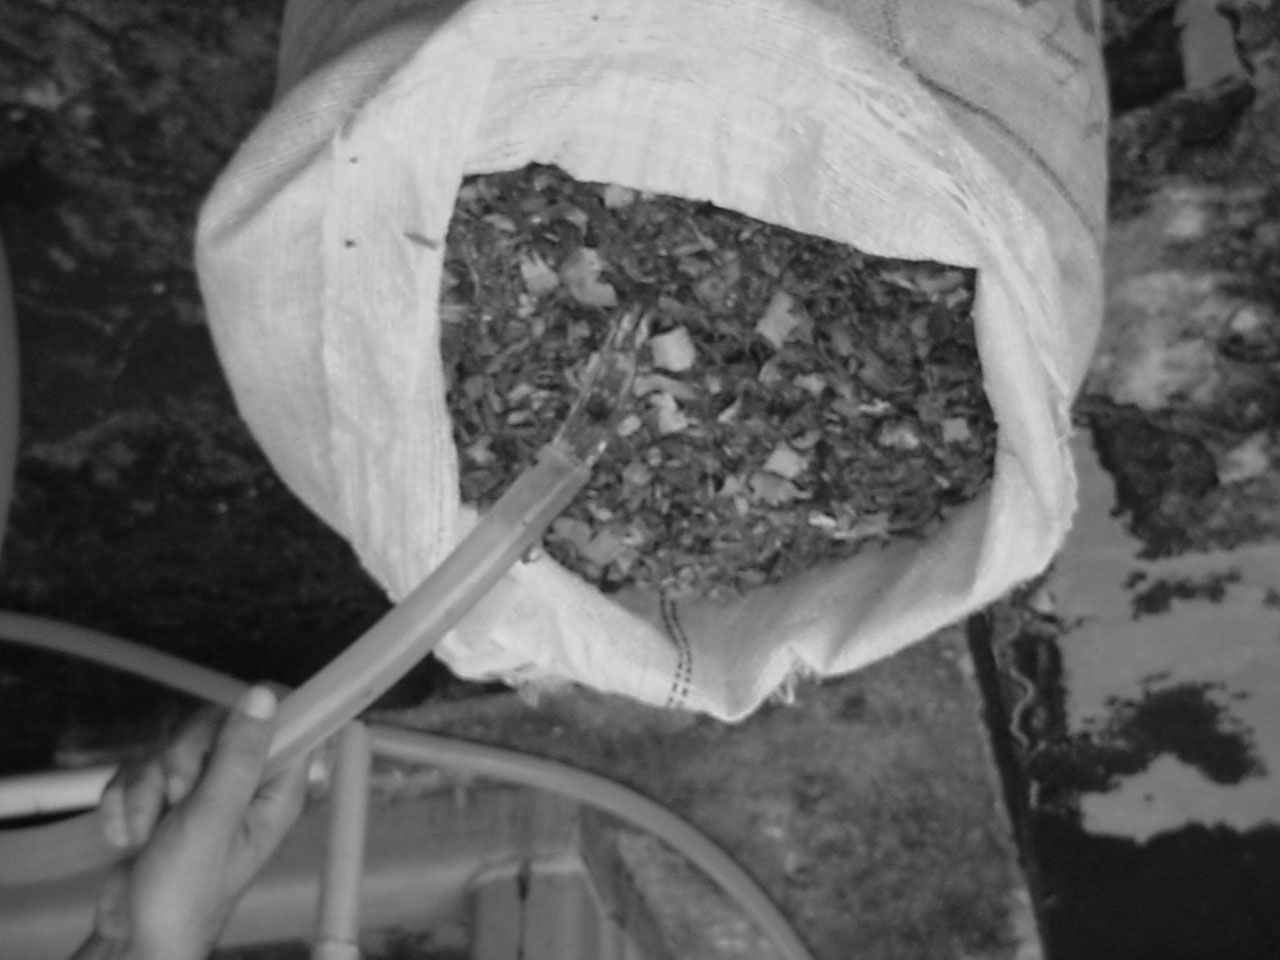 116 PINHEIRO, G.F. et al. (a) (b) Figura 1 Amostra de casca de castanha (a) seca (b) úmida. Figure 1 Brazilian nut Shell sample (a) dry (b) humid.